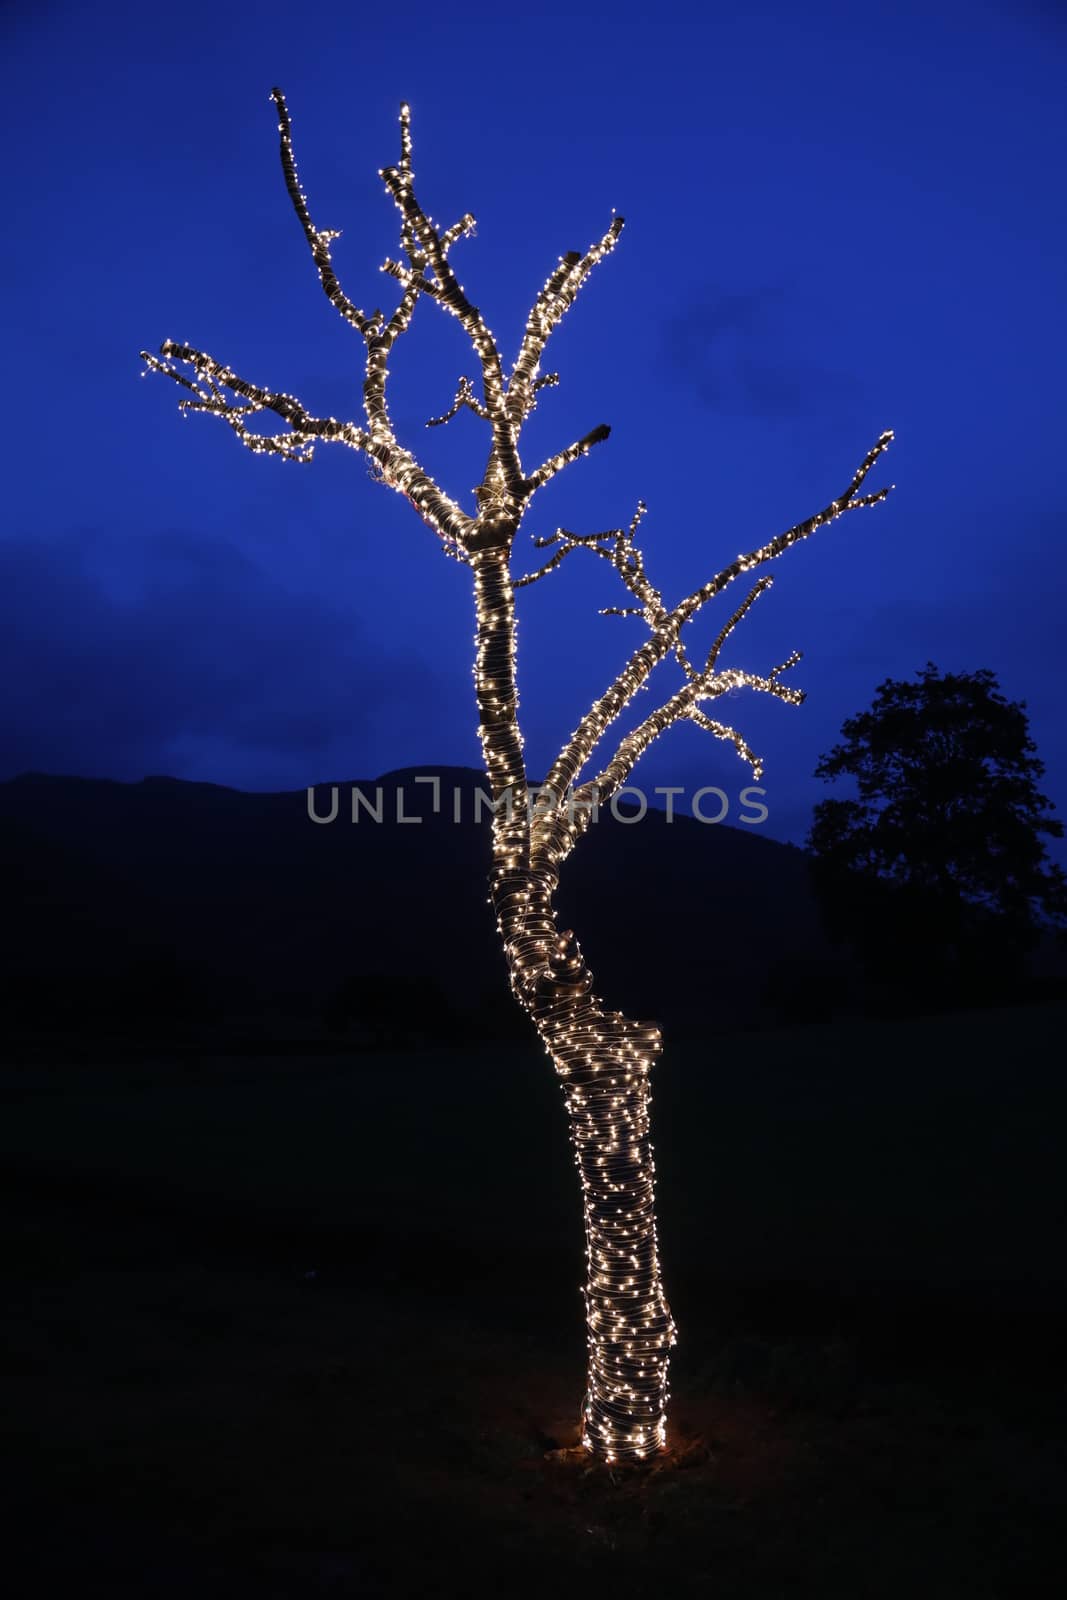 Lights Decoration on a tree by rajastills